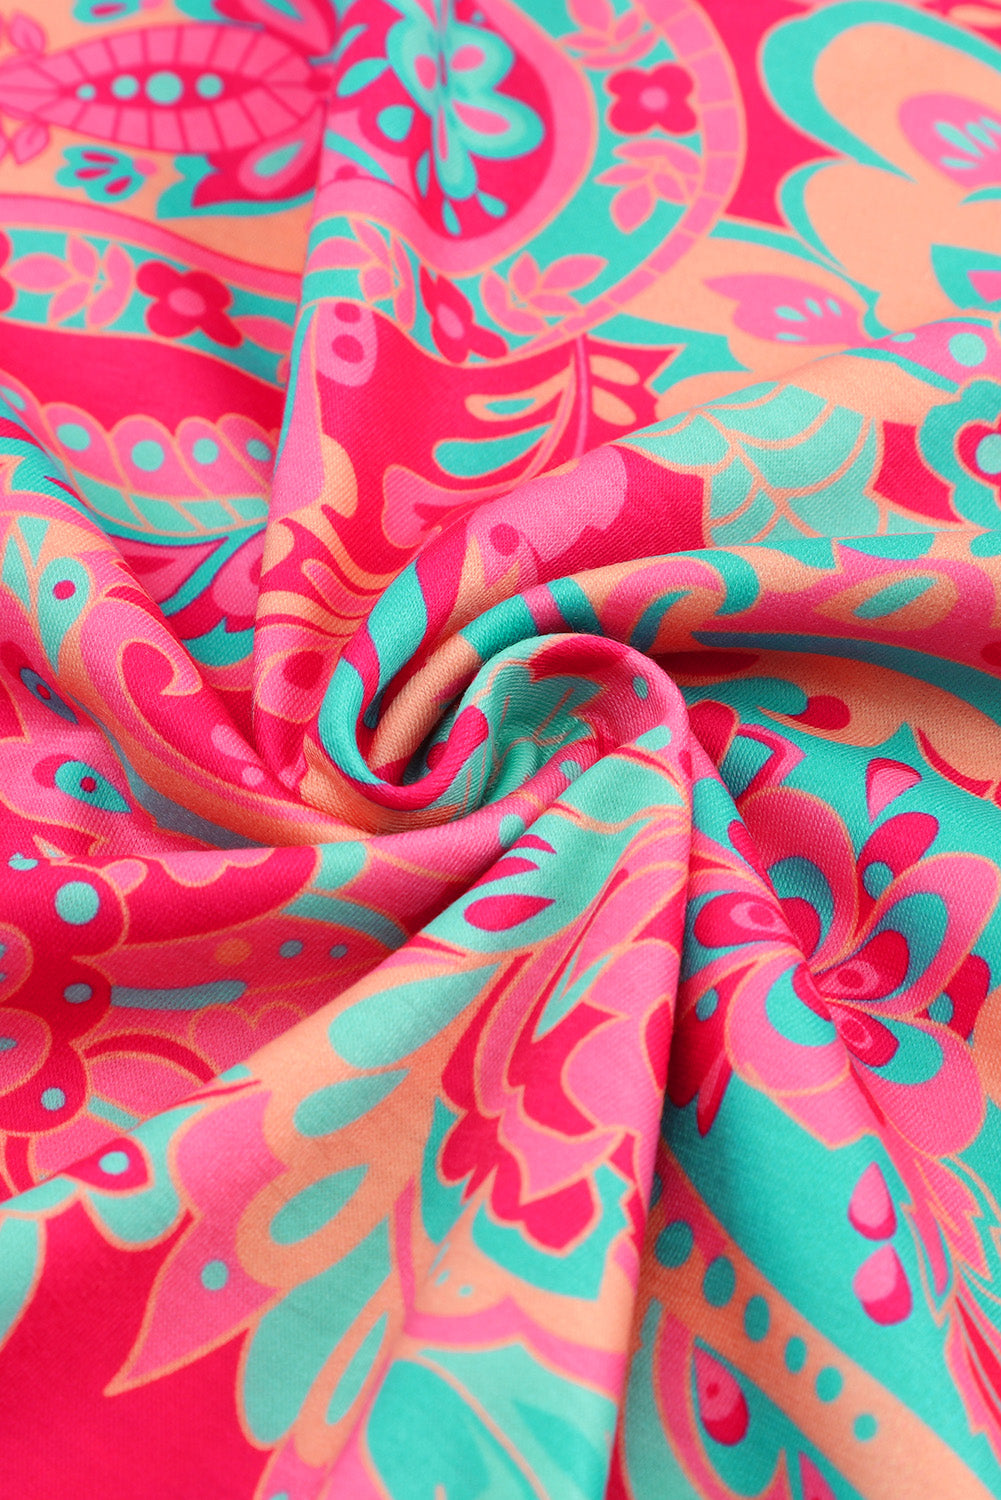 Rožnata bluza z zavihki in zavihki v velikosti z v-izrezom in velikim potiskom paisleyja